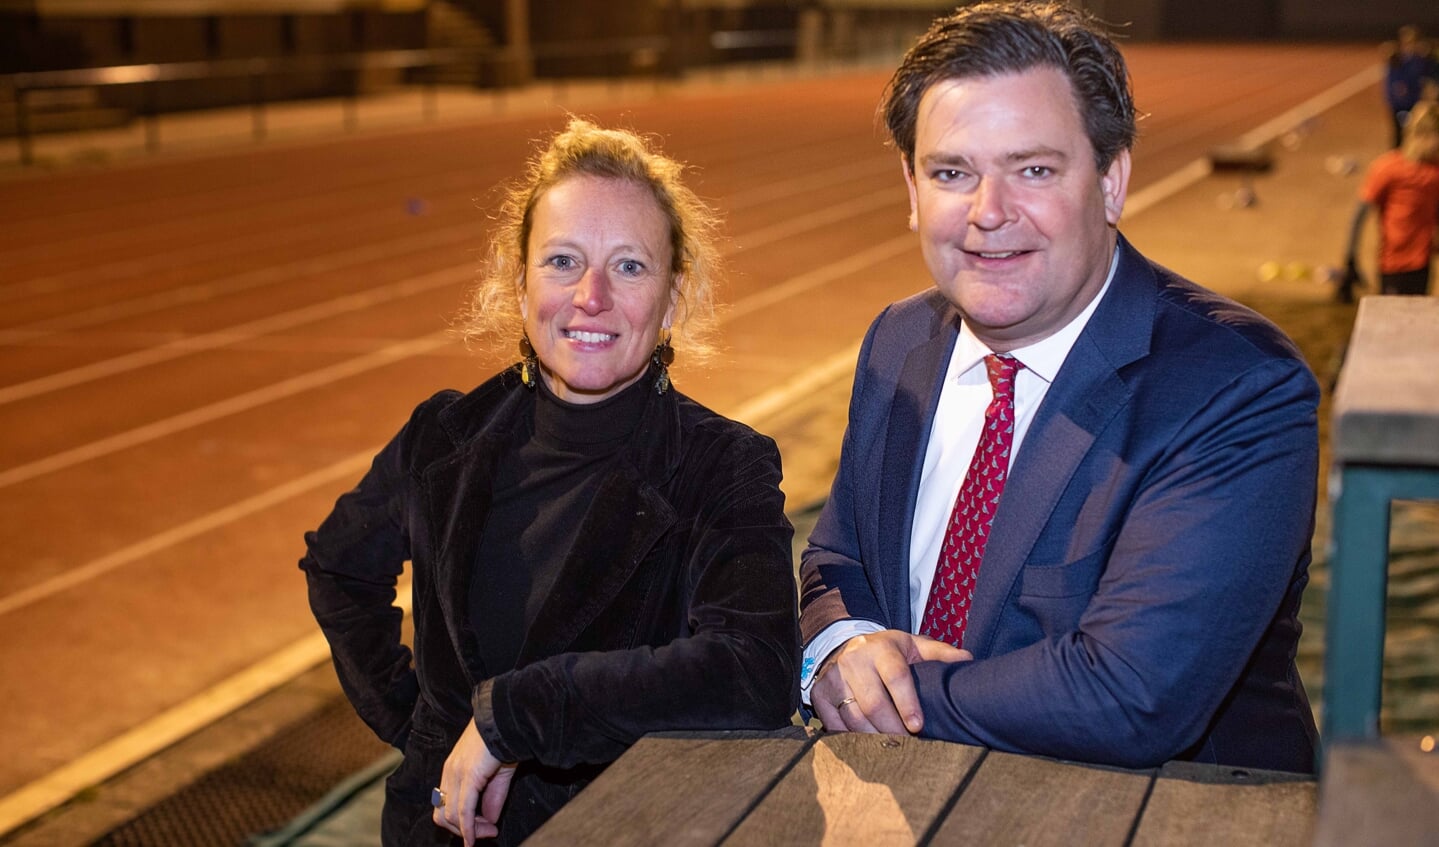 Lokaal Sportformateur Marieke Pol en wethouder Floris Voorink van Sport zien nu al mooie initiatieven ontstaan. 